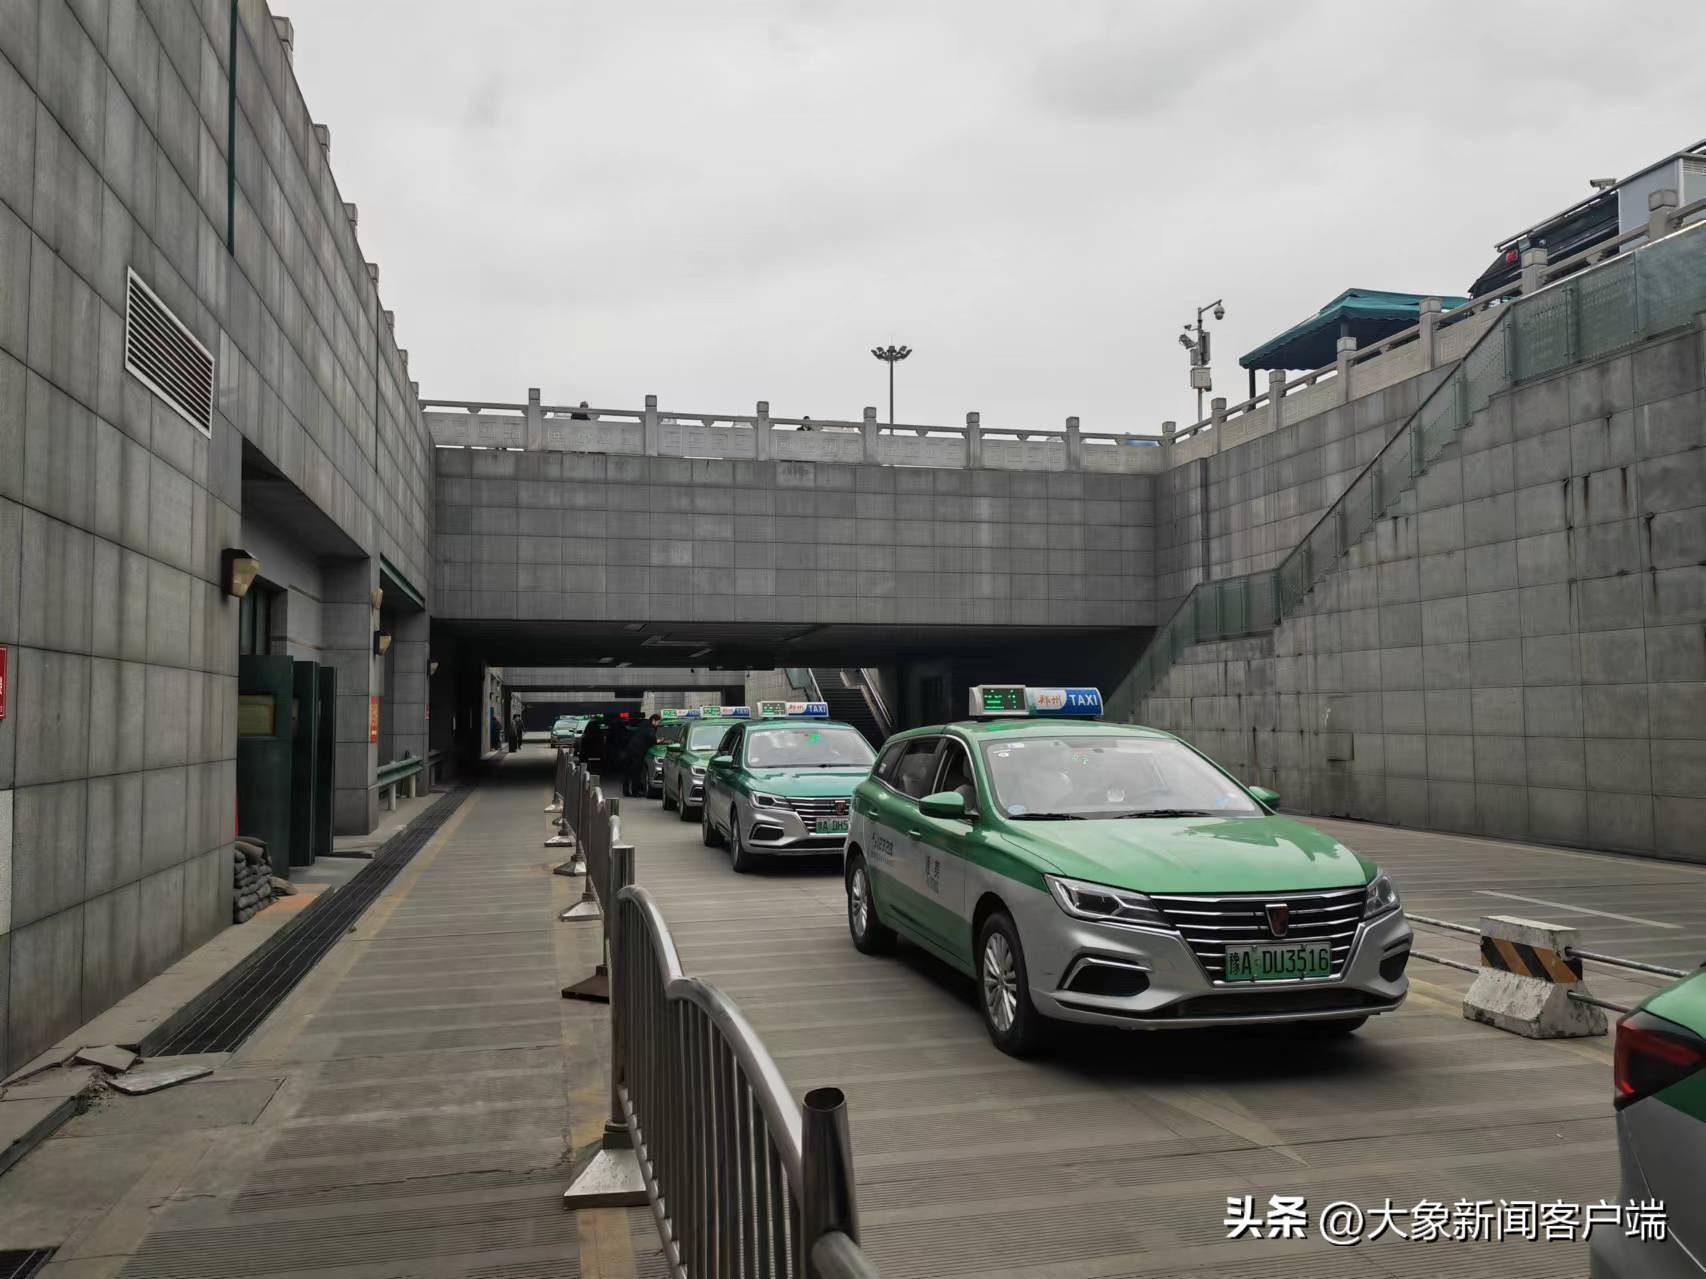 近期,有乘客表示,乘坐出租车从郑州到机场或开封,兰考,经过etc通道